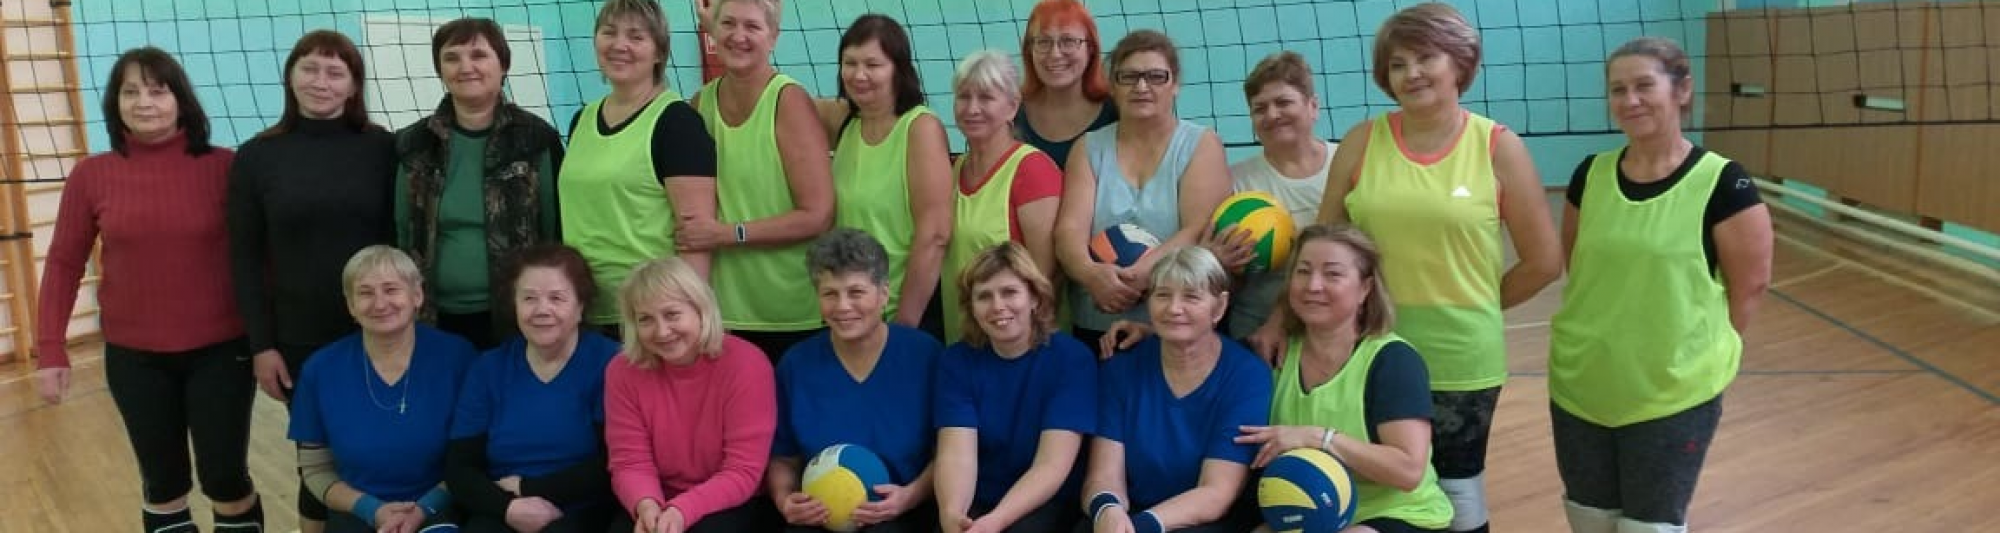 День матери женщины Академического округа отпраздновали волейбольным турниром 